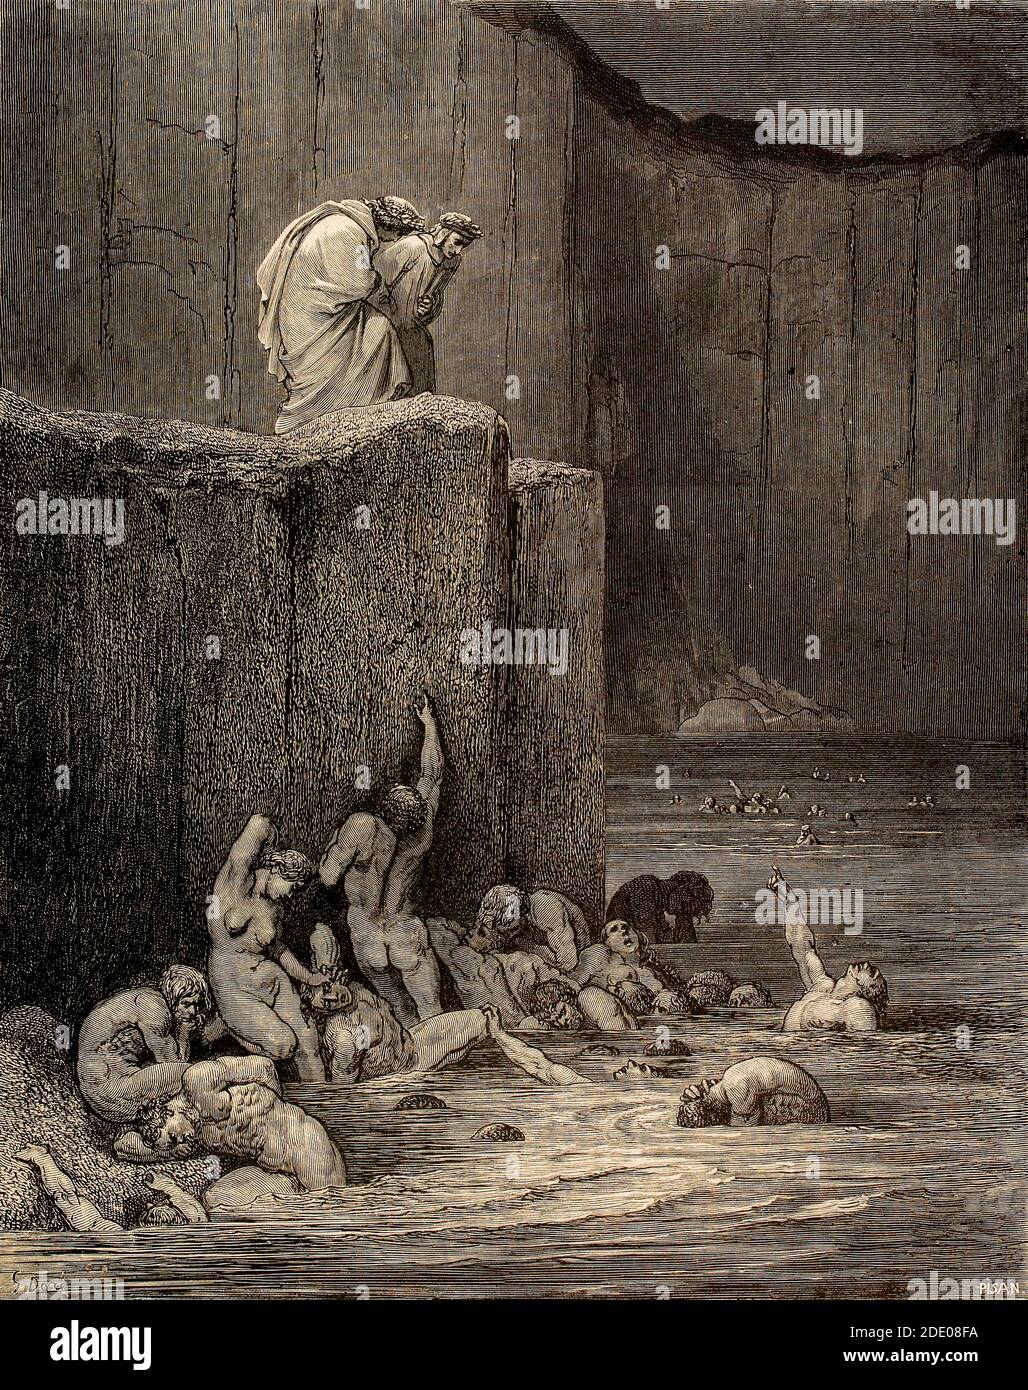 Dante Divina Commedia - Infierno - XVIII Canto - el Flatterers - VIII Círculo - ilustración de Gustave Dorè Foto de stock